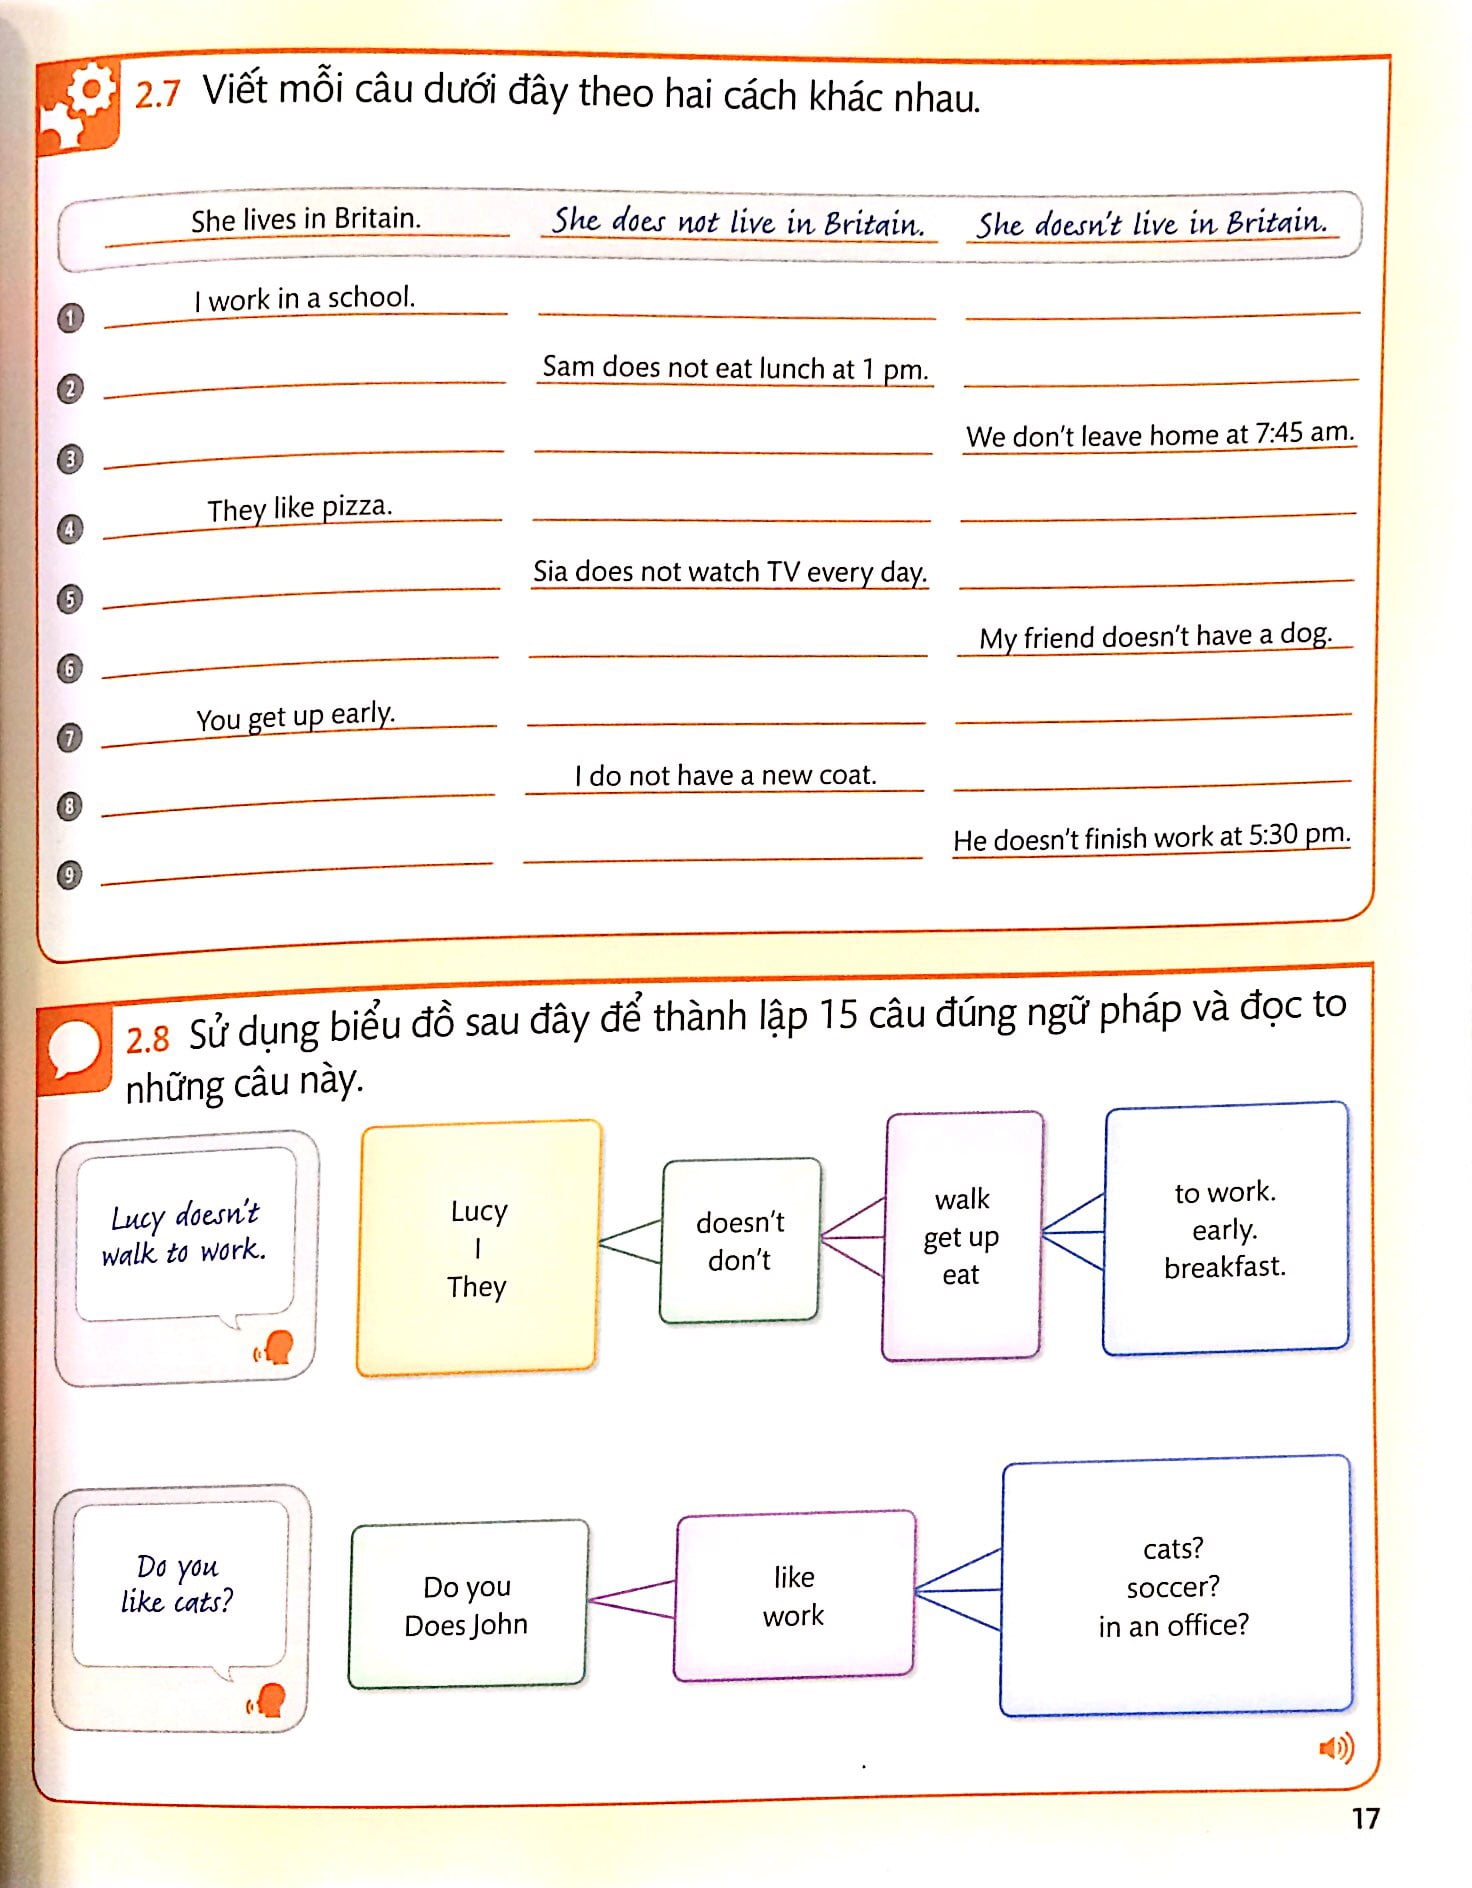 Tiếng Anh Cho Mọi Người - English For Everyone - Level 2 Beginner - Practice Book Kèm CD PDF